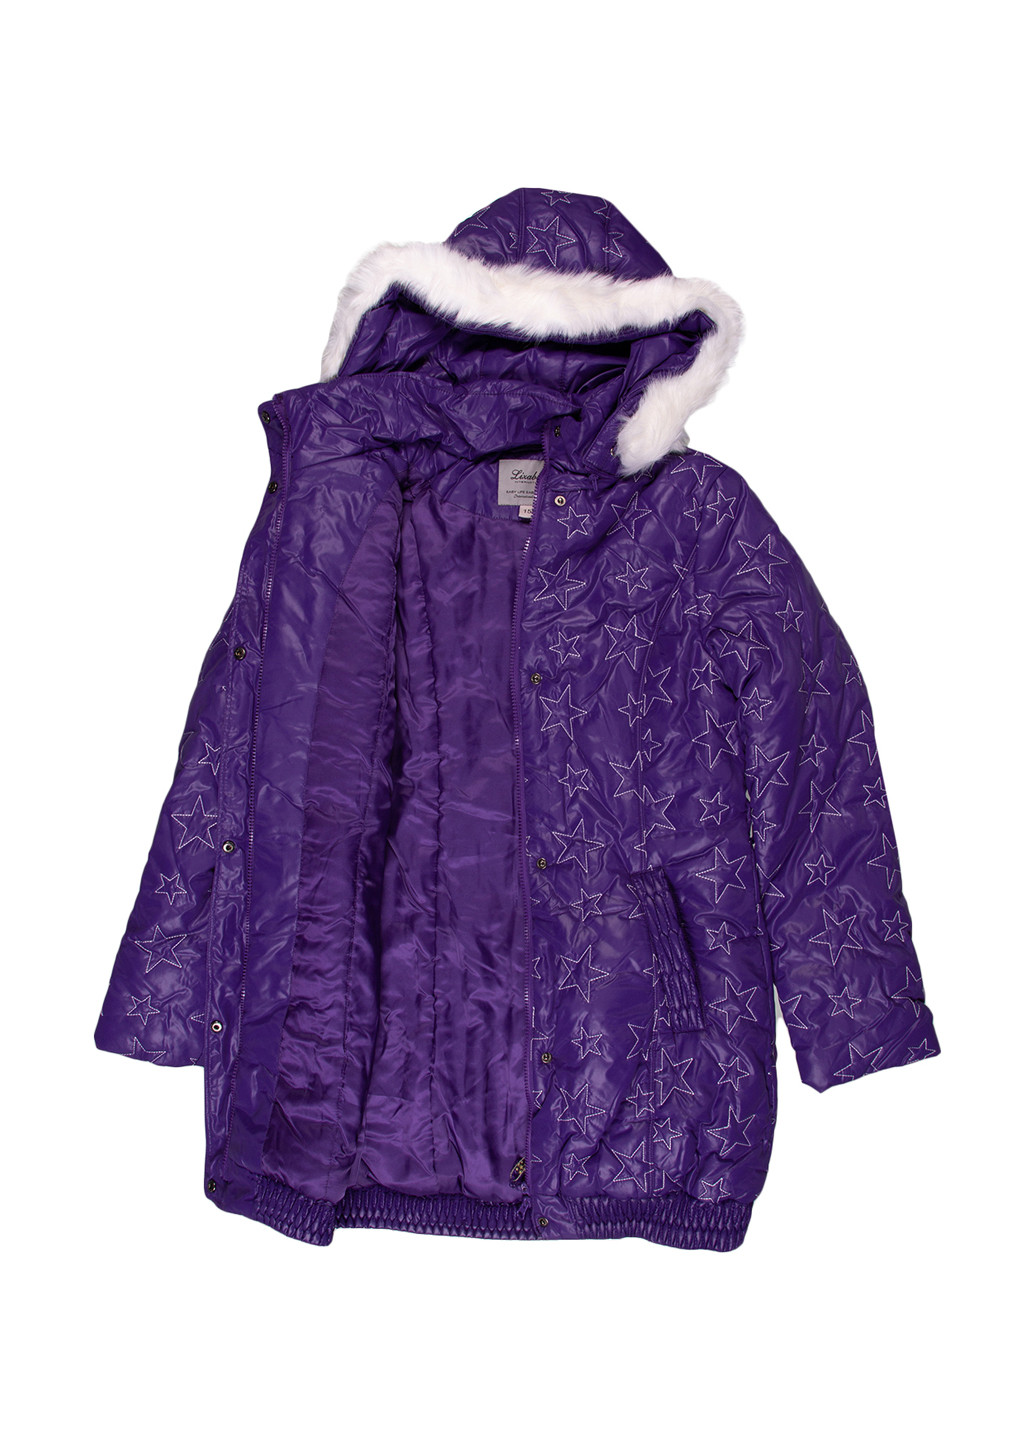 Фиолетовая зимняя куртка Lizabeta